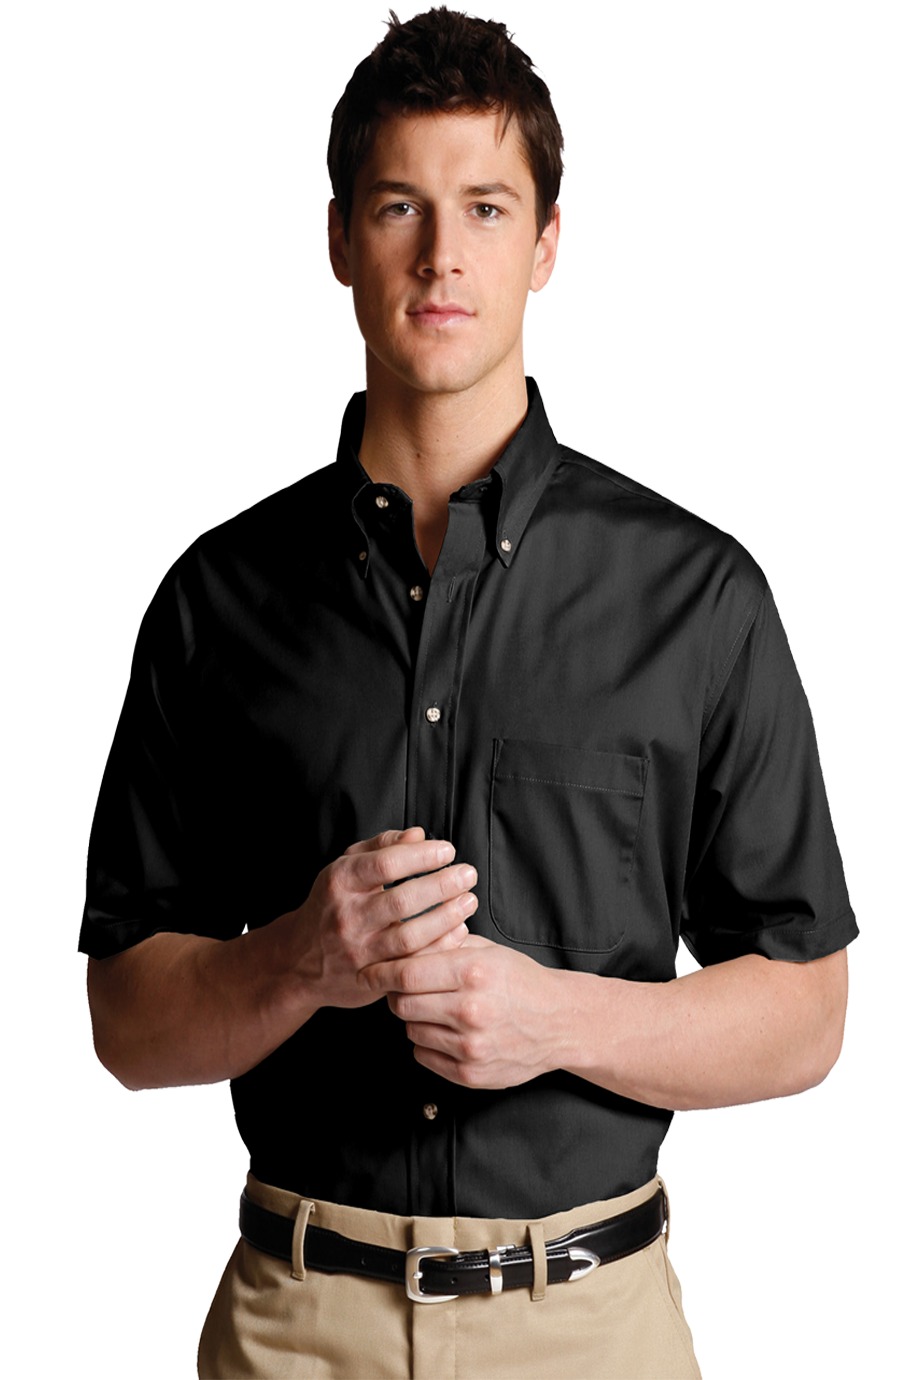 Edwards Garment 1230 - Men's Easy Care Short Sleeve Poplin Shirt